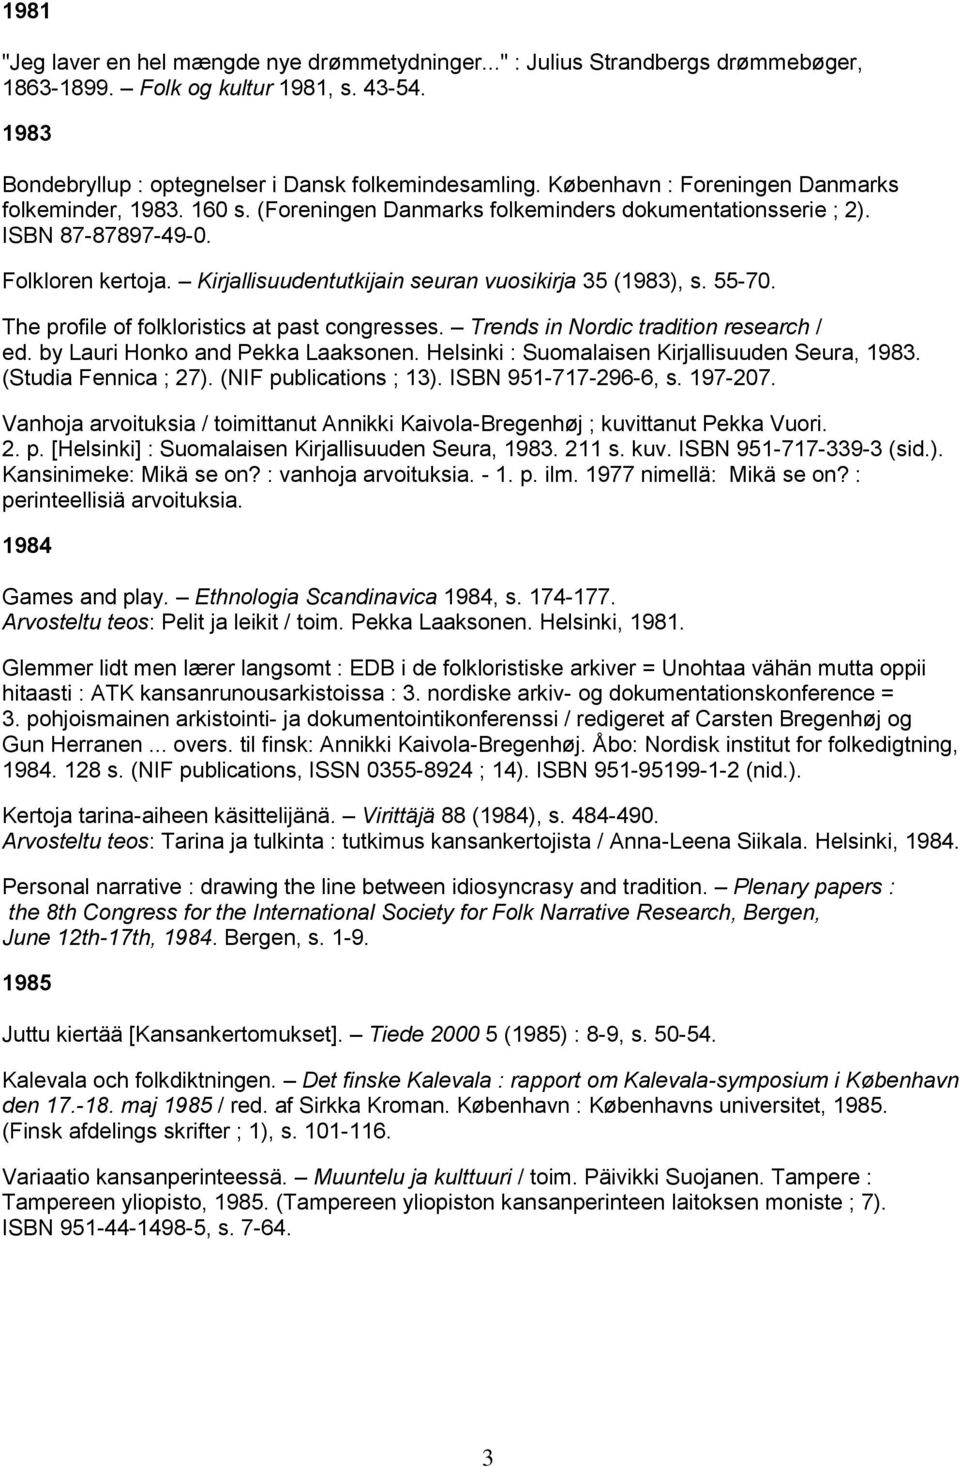 Kirjallisuudentutkijain seuran vuosikirja 35 (1983), s. 55-70. The profile of folkloristics at past congresses. Trends in Nordic tradition research / ed. by Lauri Honko and Pekka Laaksonen.